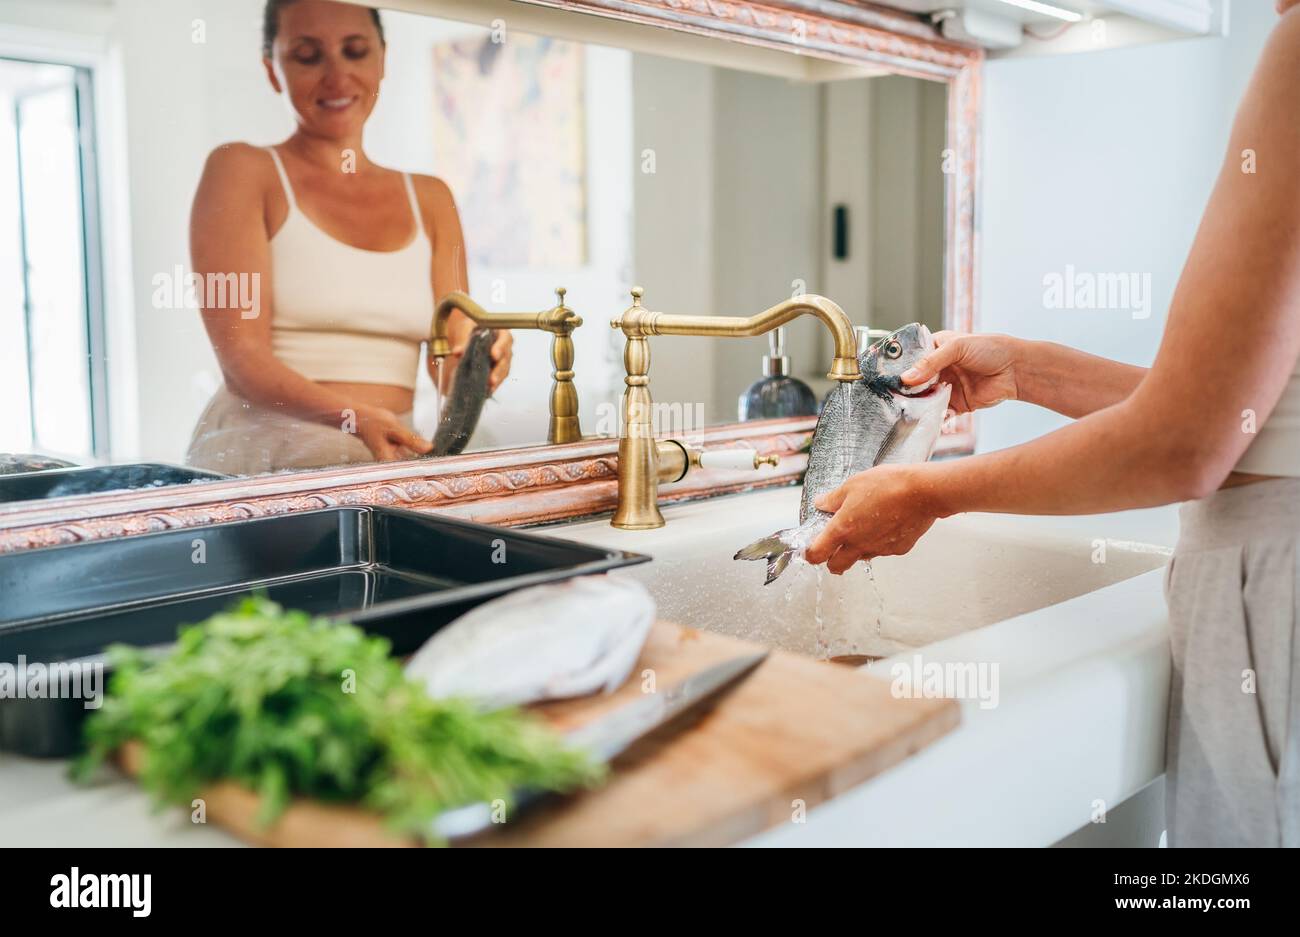 Lächelnde junge Erwachsene Frau, die Fische unter dem Wasserhahn der Küchenspüle waschen. Gesunde Meeresfrüchte Zubereitung und Hausarbeit Konzept Bild. Stockfoto